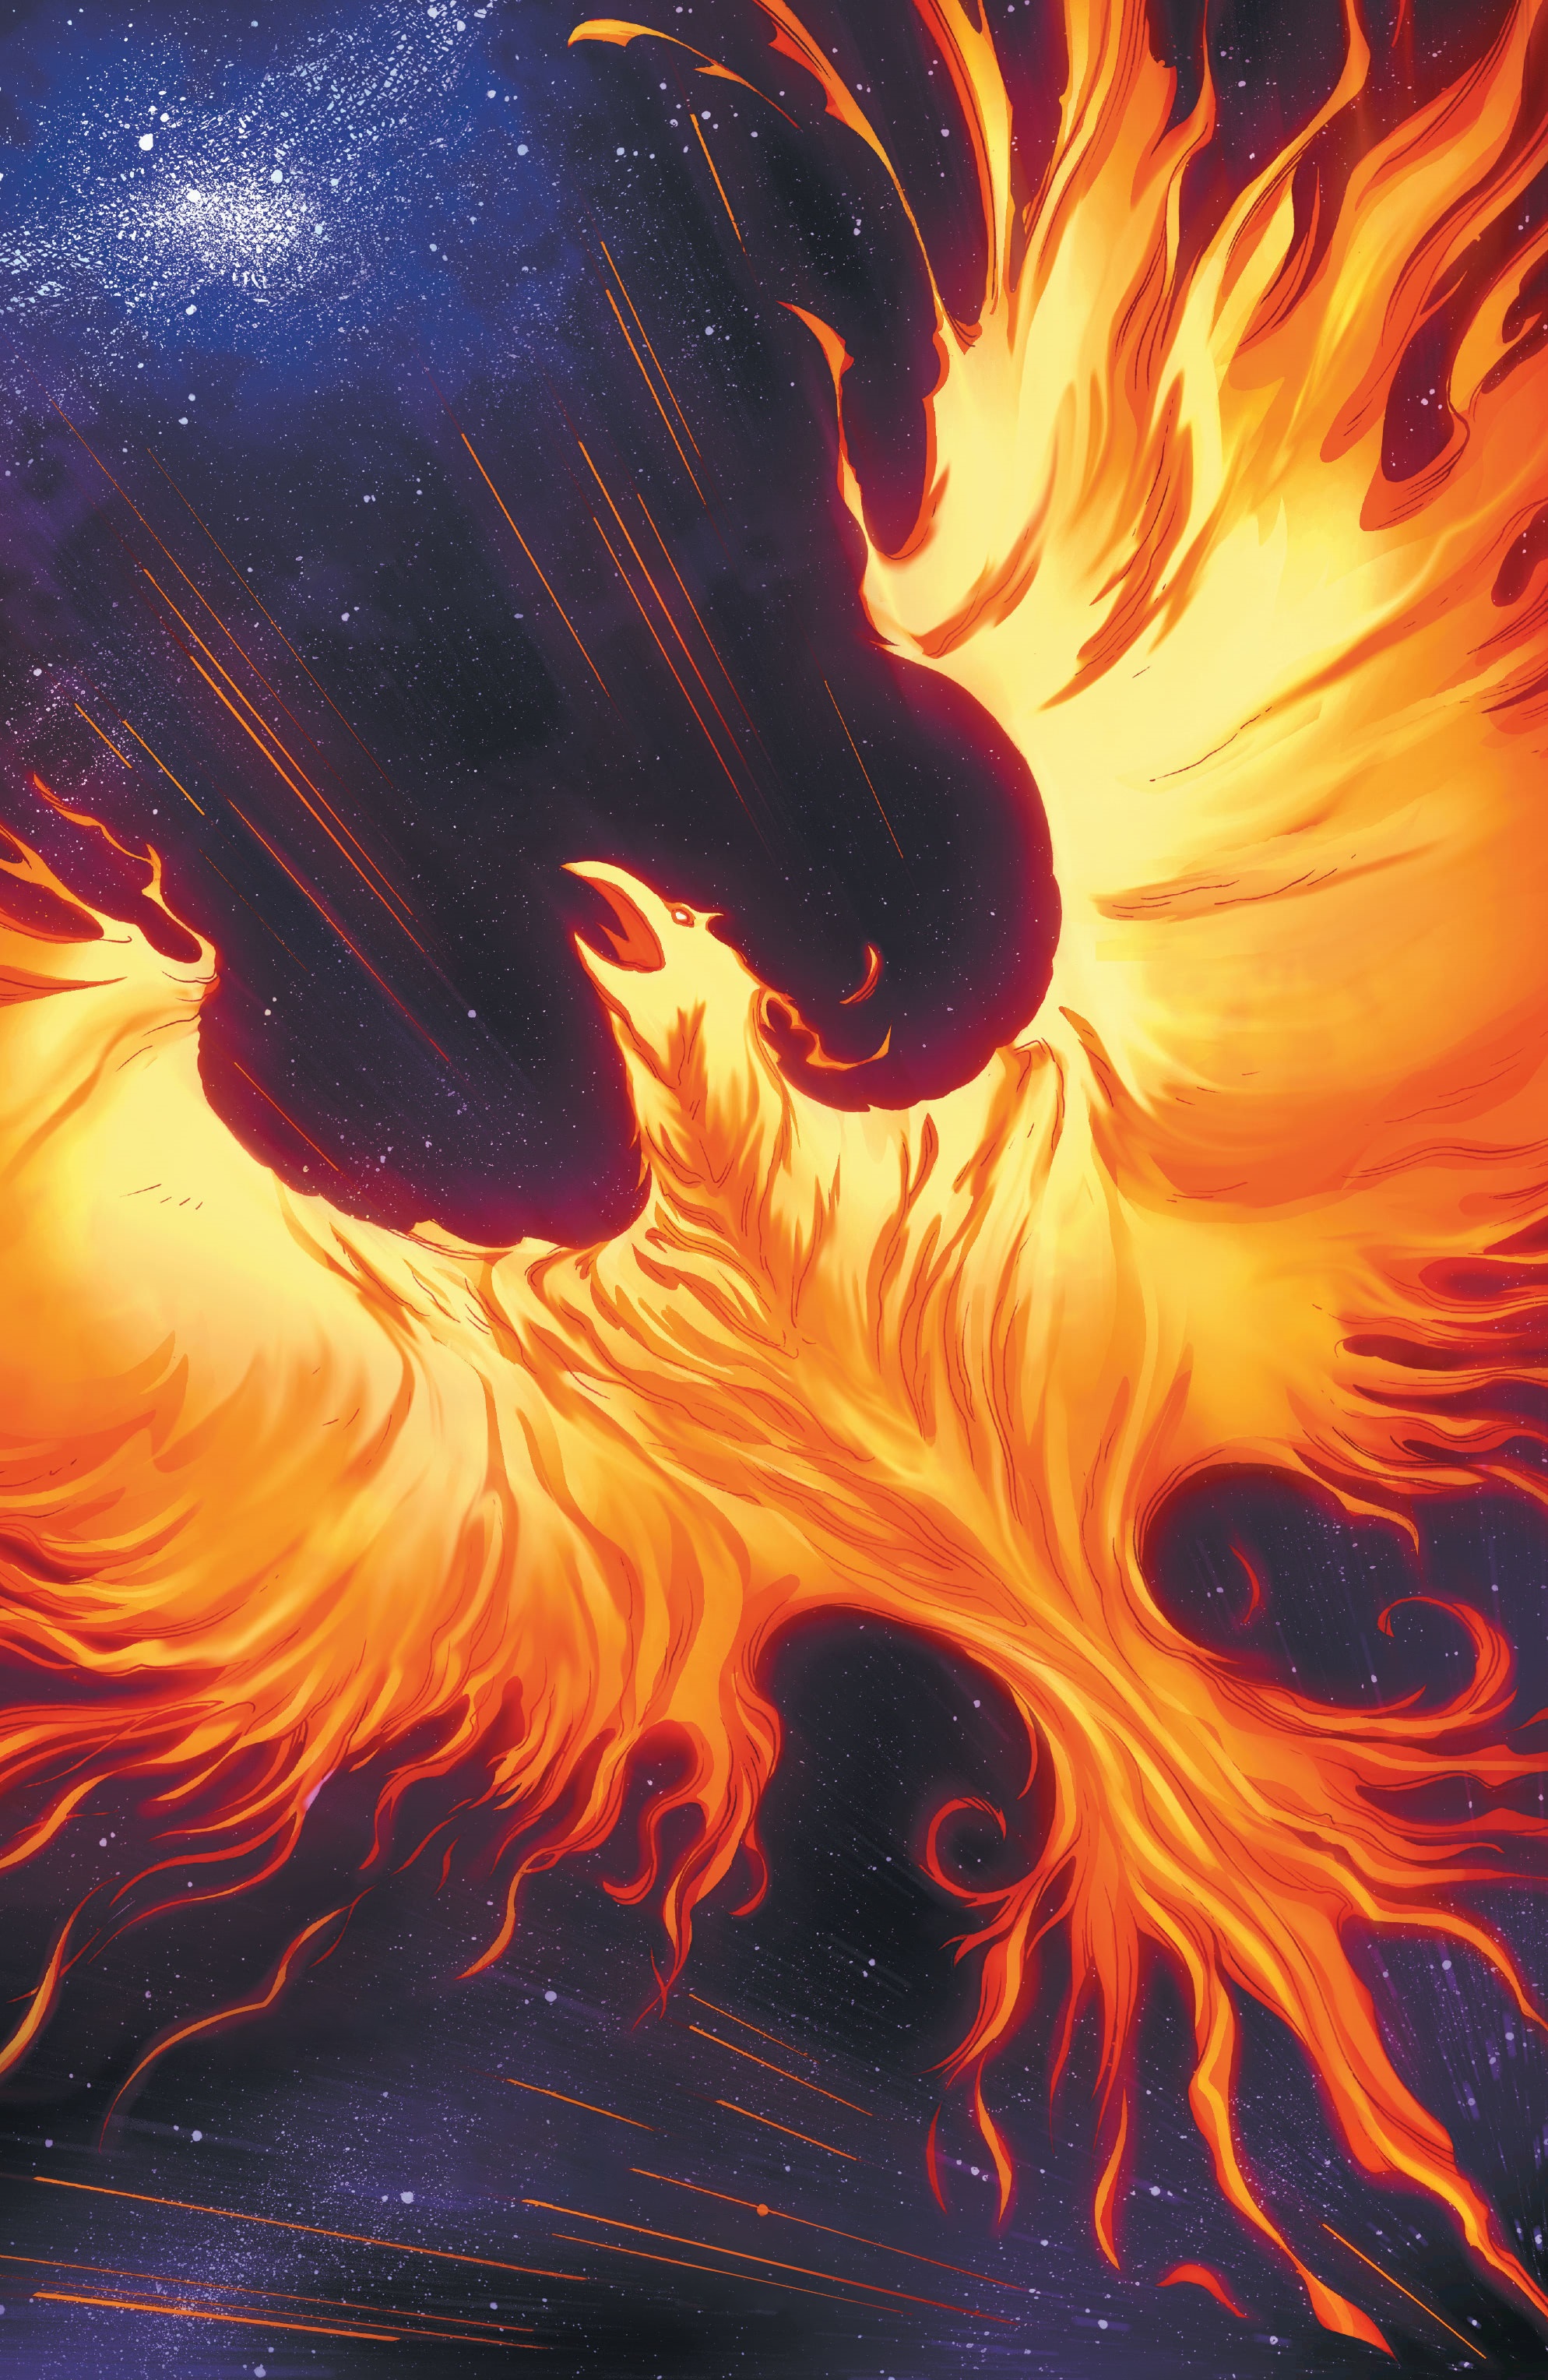 battle of the planets fiery phoenix